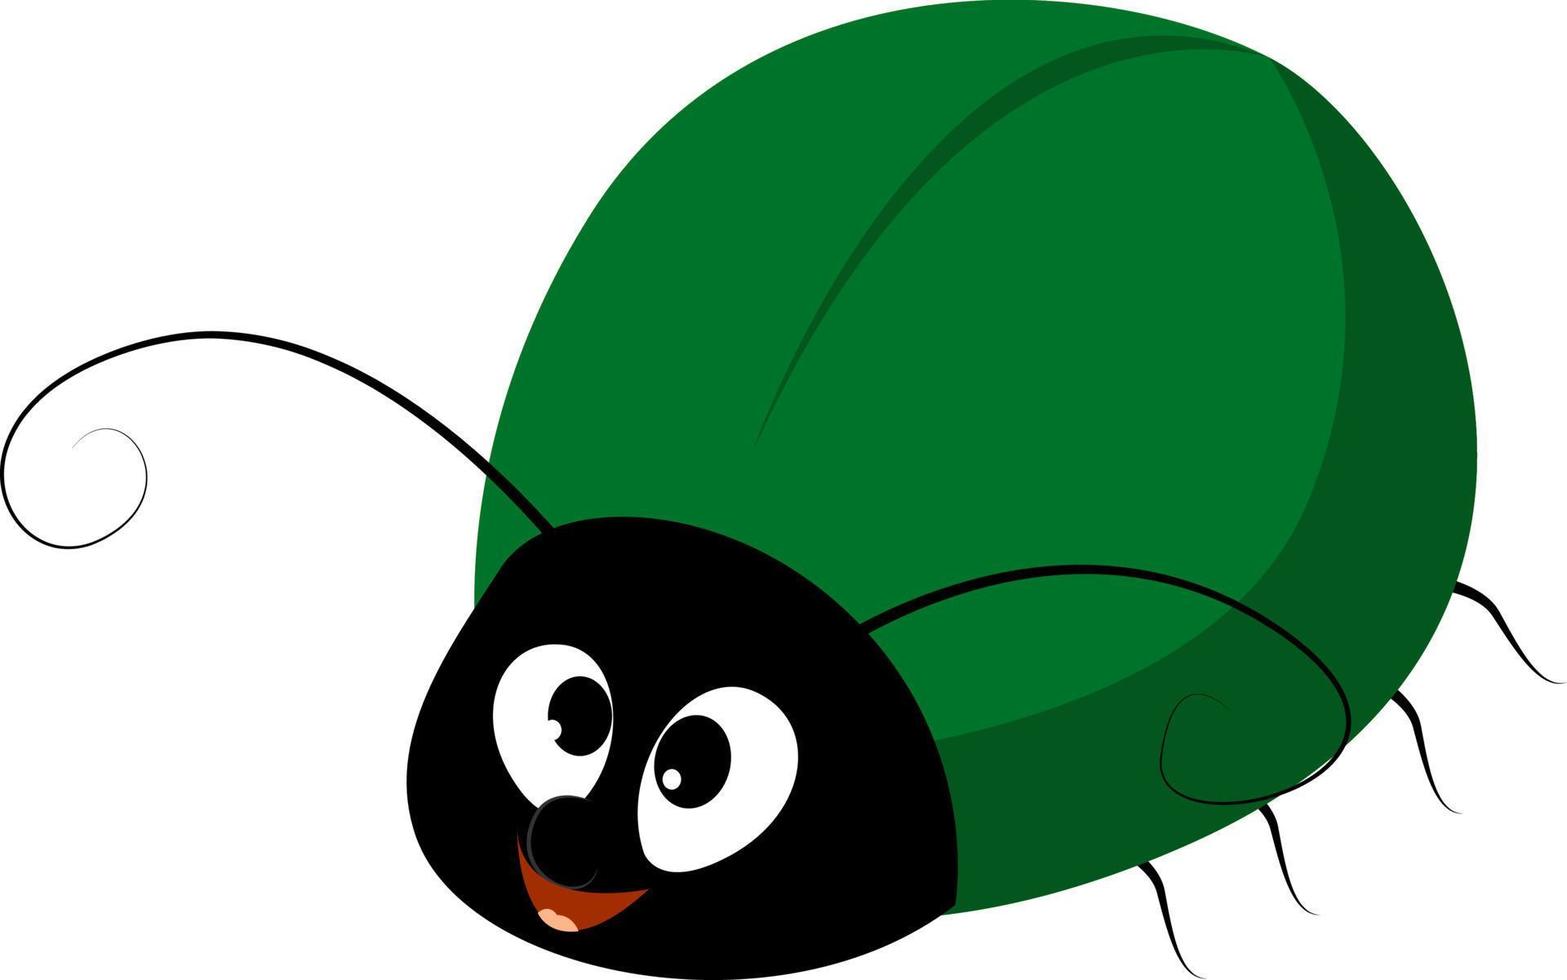 Insecto verde, ilustración, vector sobre fondo blanco.